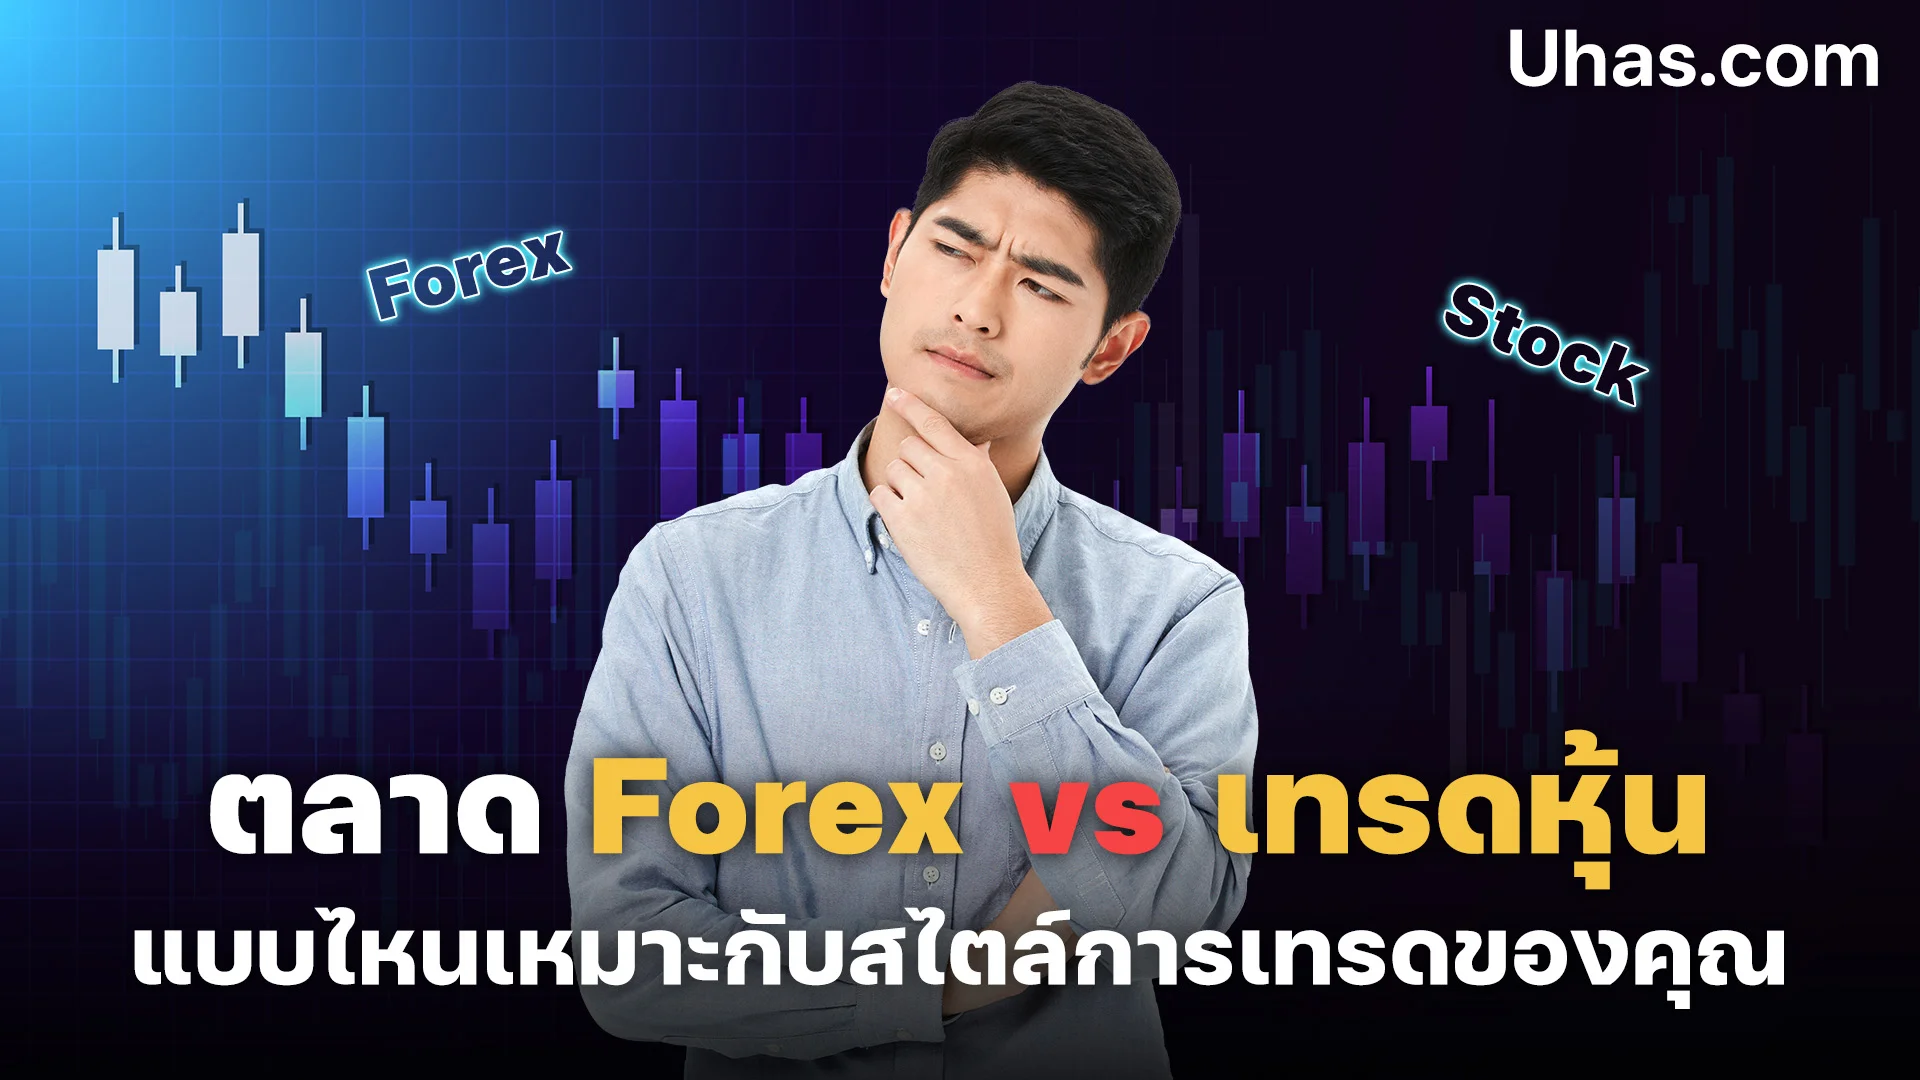 ตลาด Forex vs เทรดหุ้น แบบไหนเหมาะกับสไตล์การเทรดของคุณ